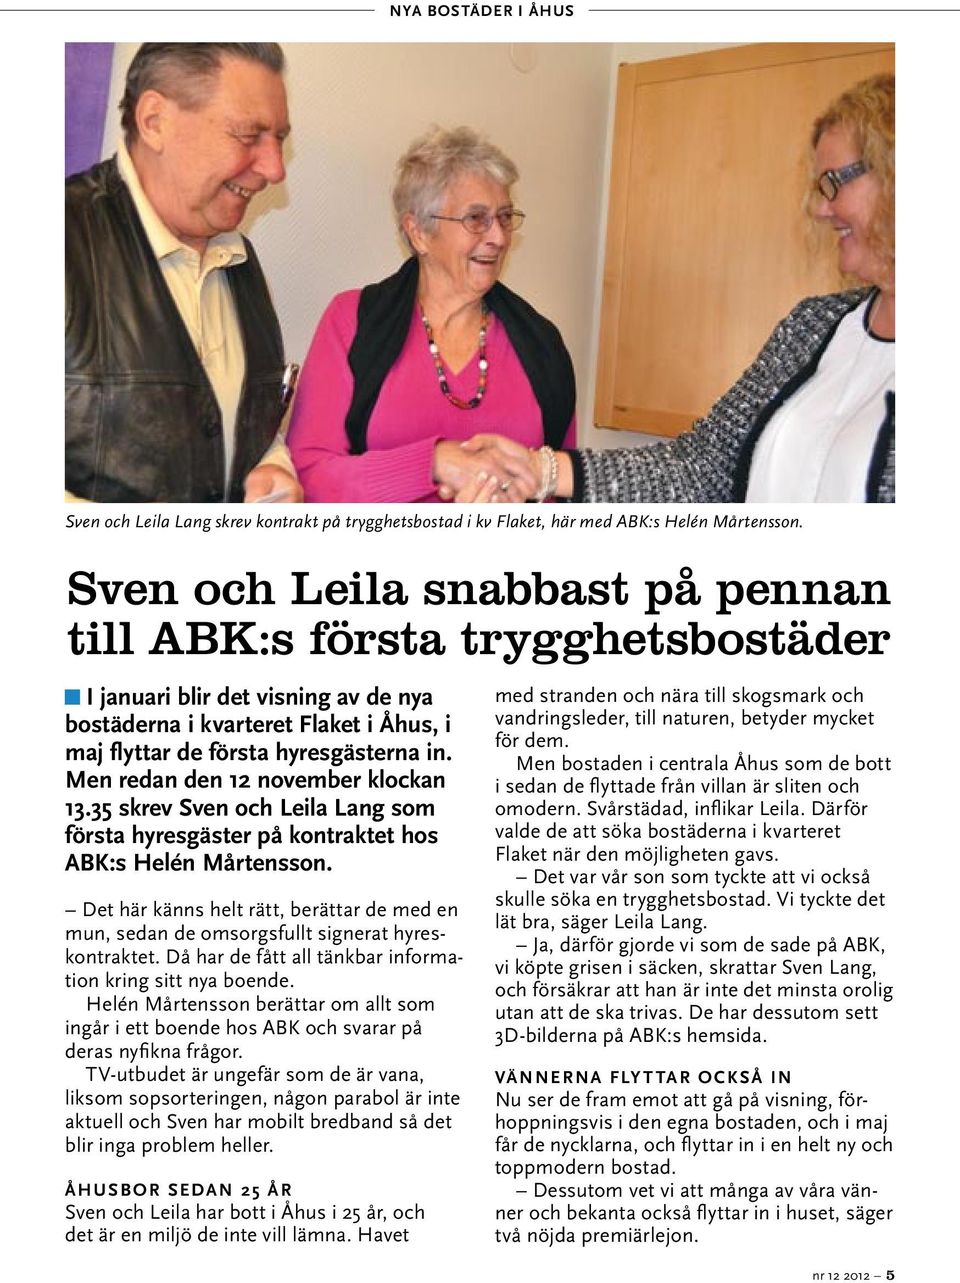 Men redan den 12 november klockan 13.35 skrev Sven och Leila Lang som första hyresgäster på kontraktet hos ABK:s Helén Mårtensson.